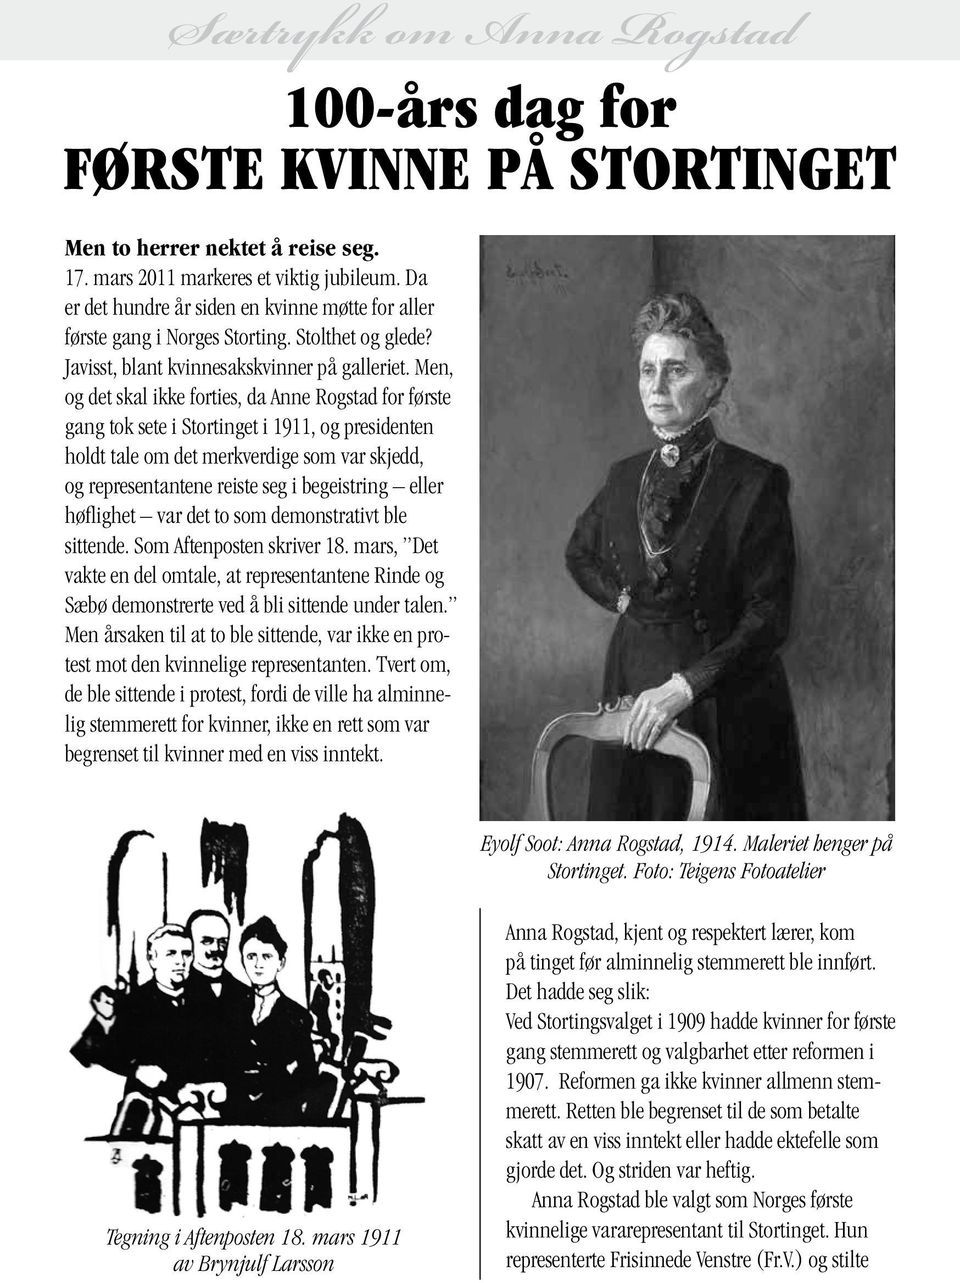 Men, og det skal ikke forties, da Anne Rogstad for første gang tok sete i Stortinget i 1911, og presidenten holdt tale om det merkverdige som var skjedd, og representantene reiste seg i begeistring